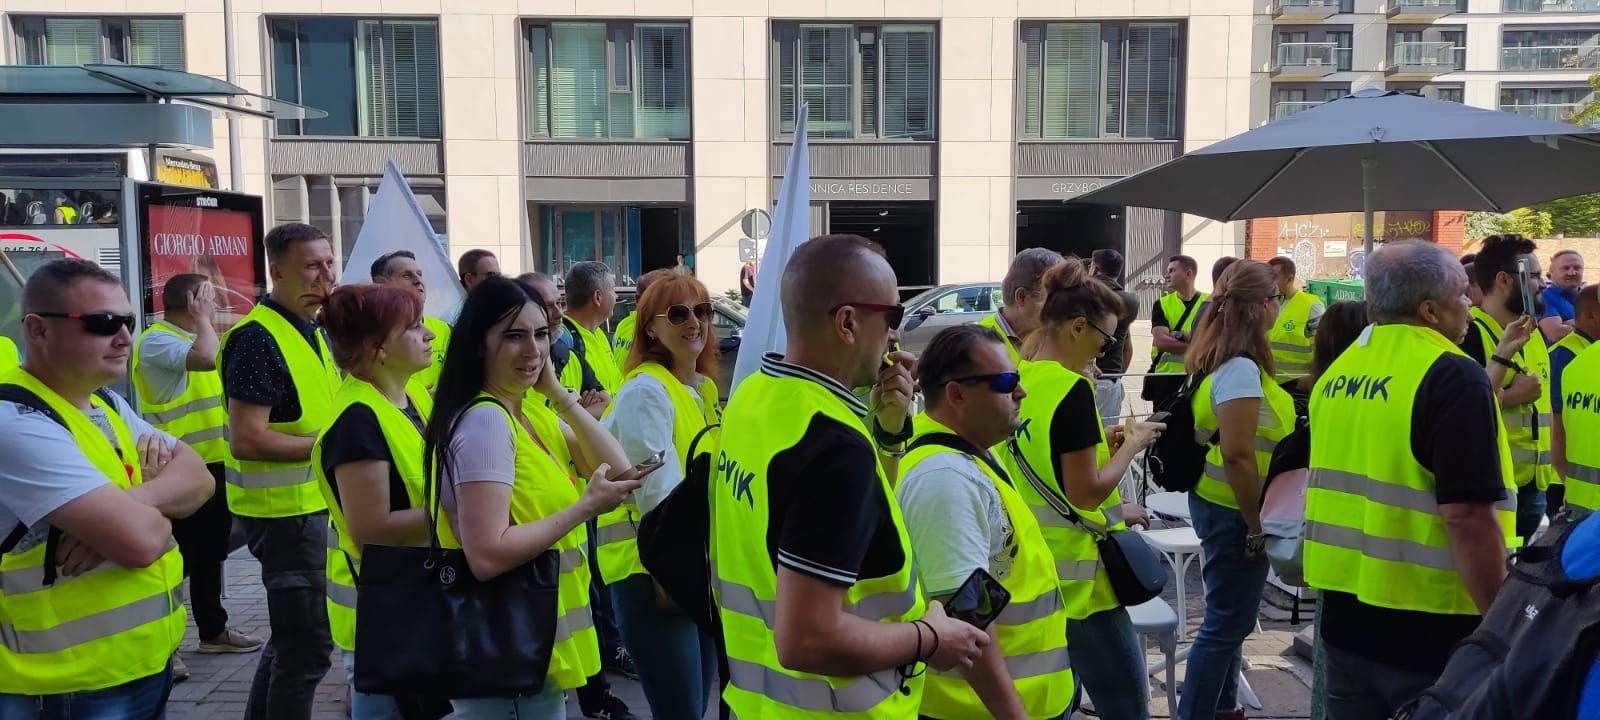 Manifestacja pracowników branży wod-kan pod siedzibą PGW Wody Polskie